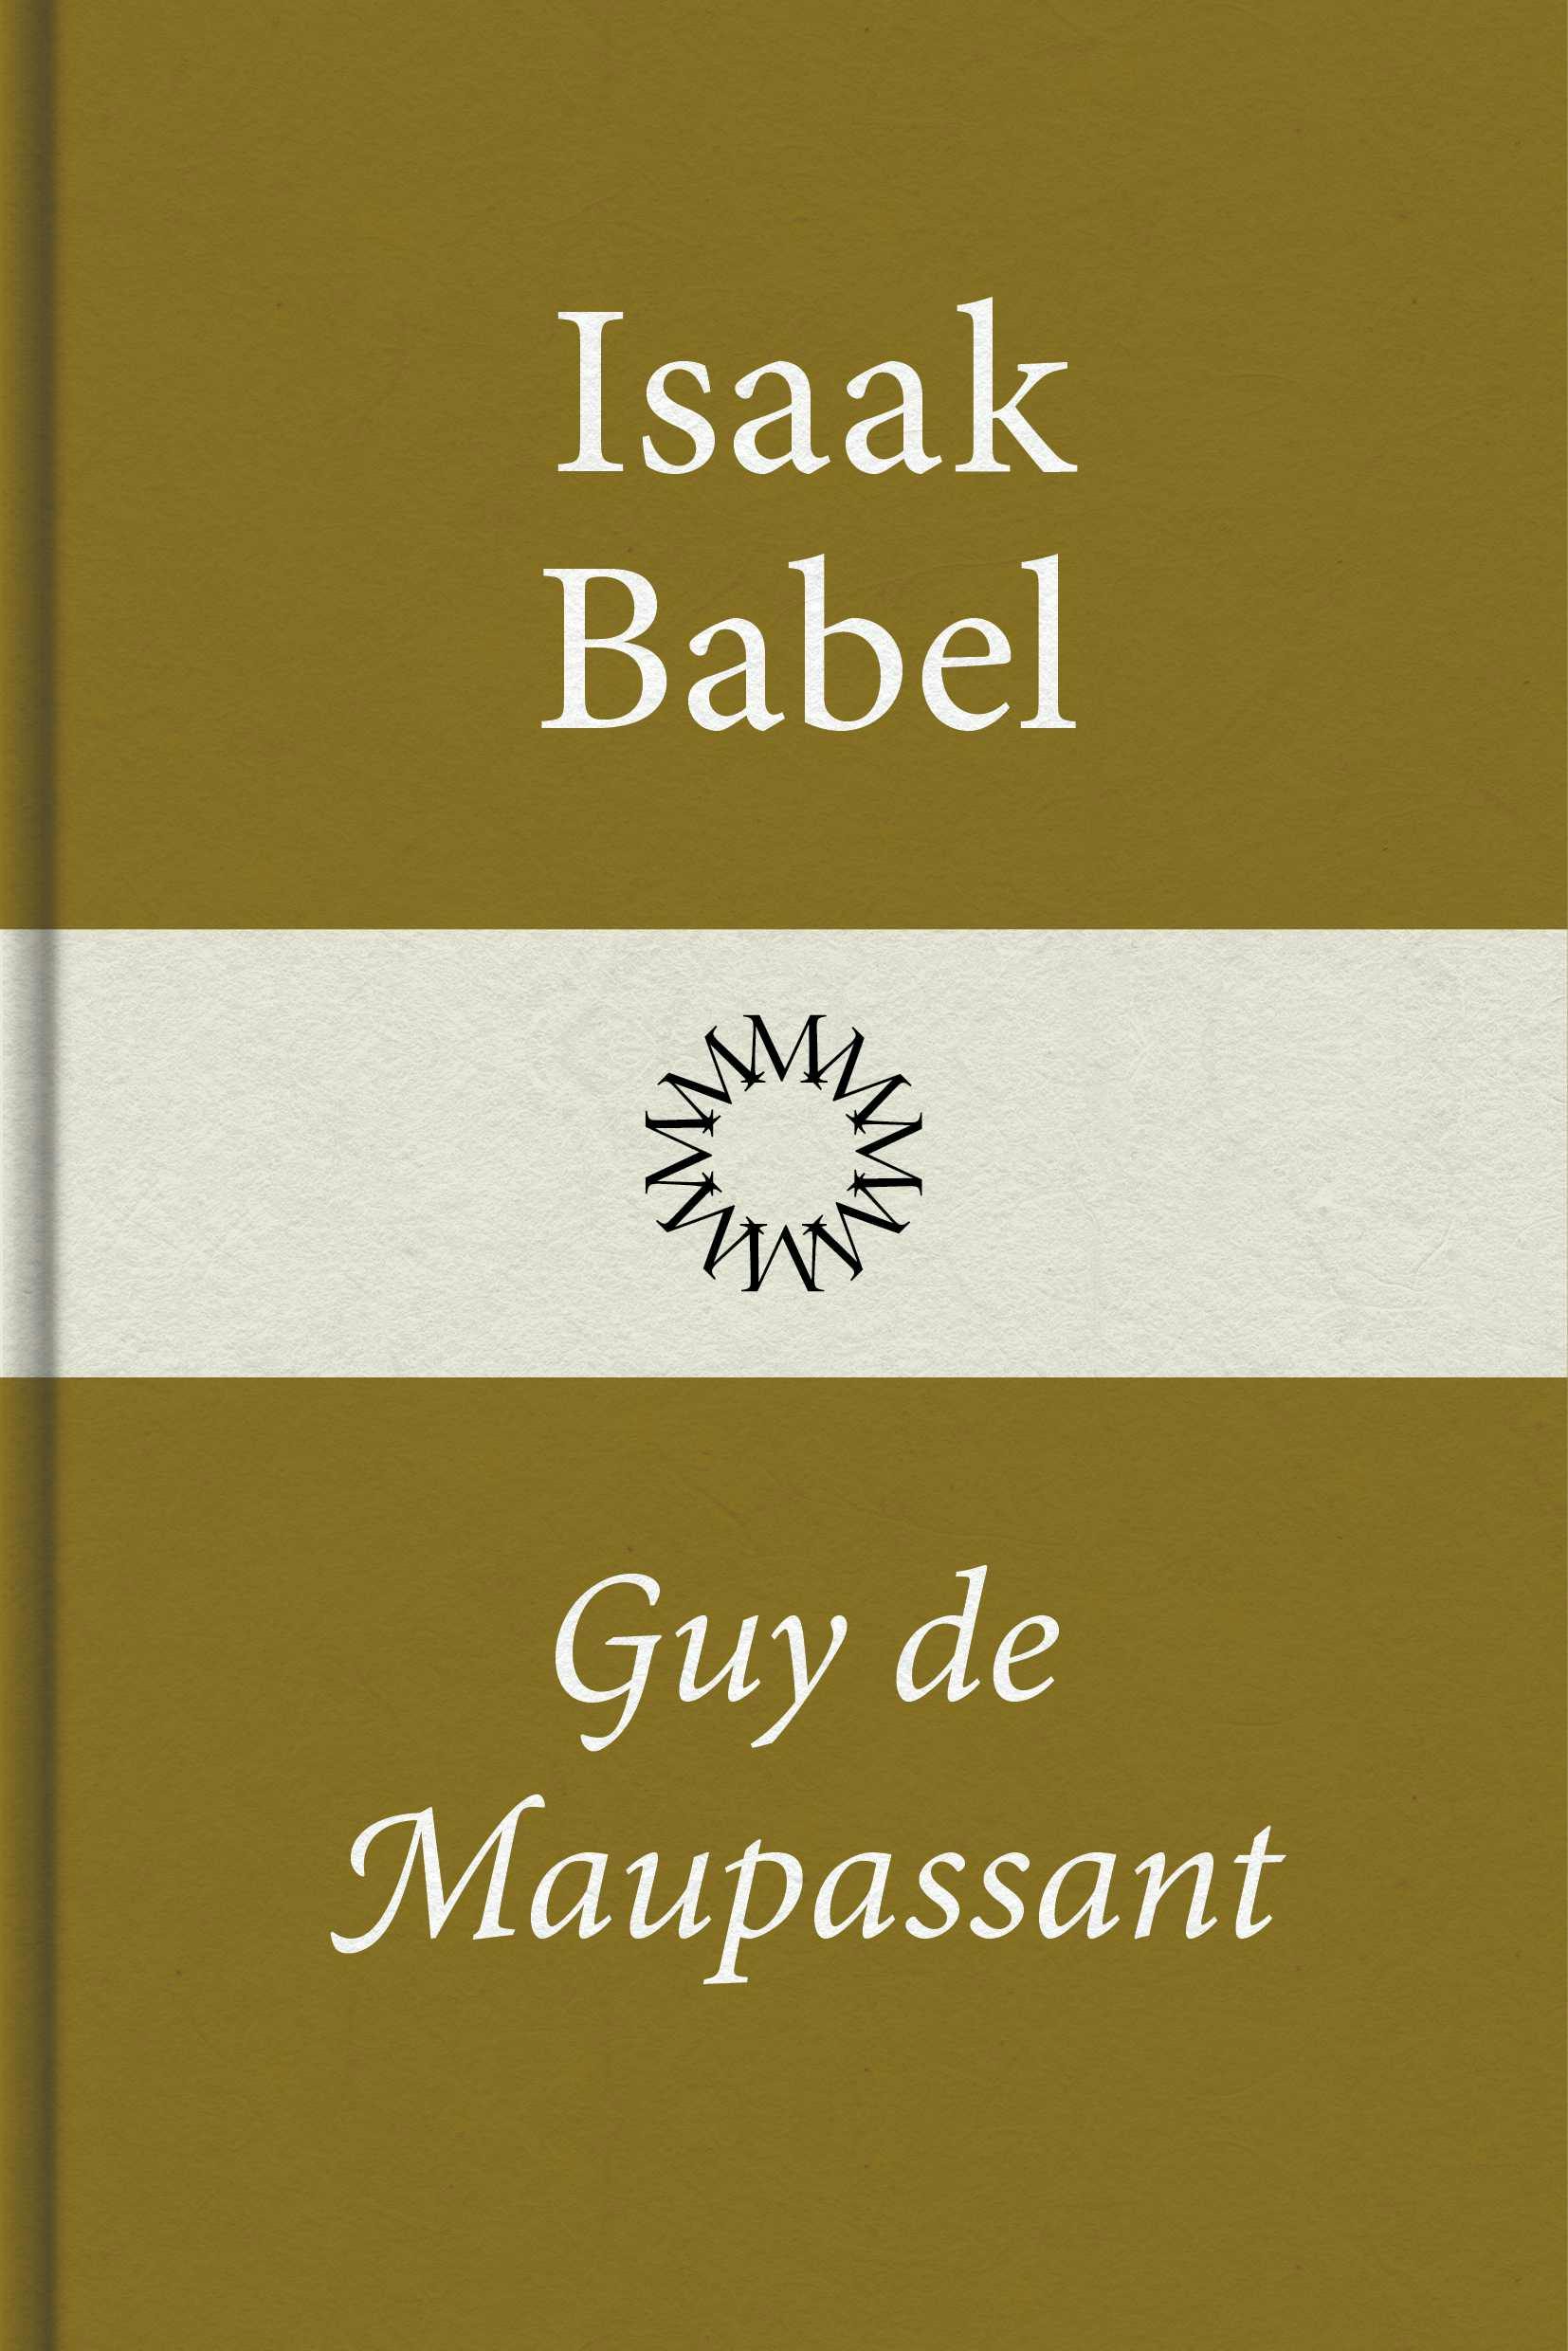 Guy de Maupassant - undefined